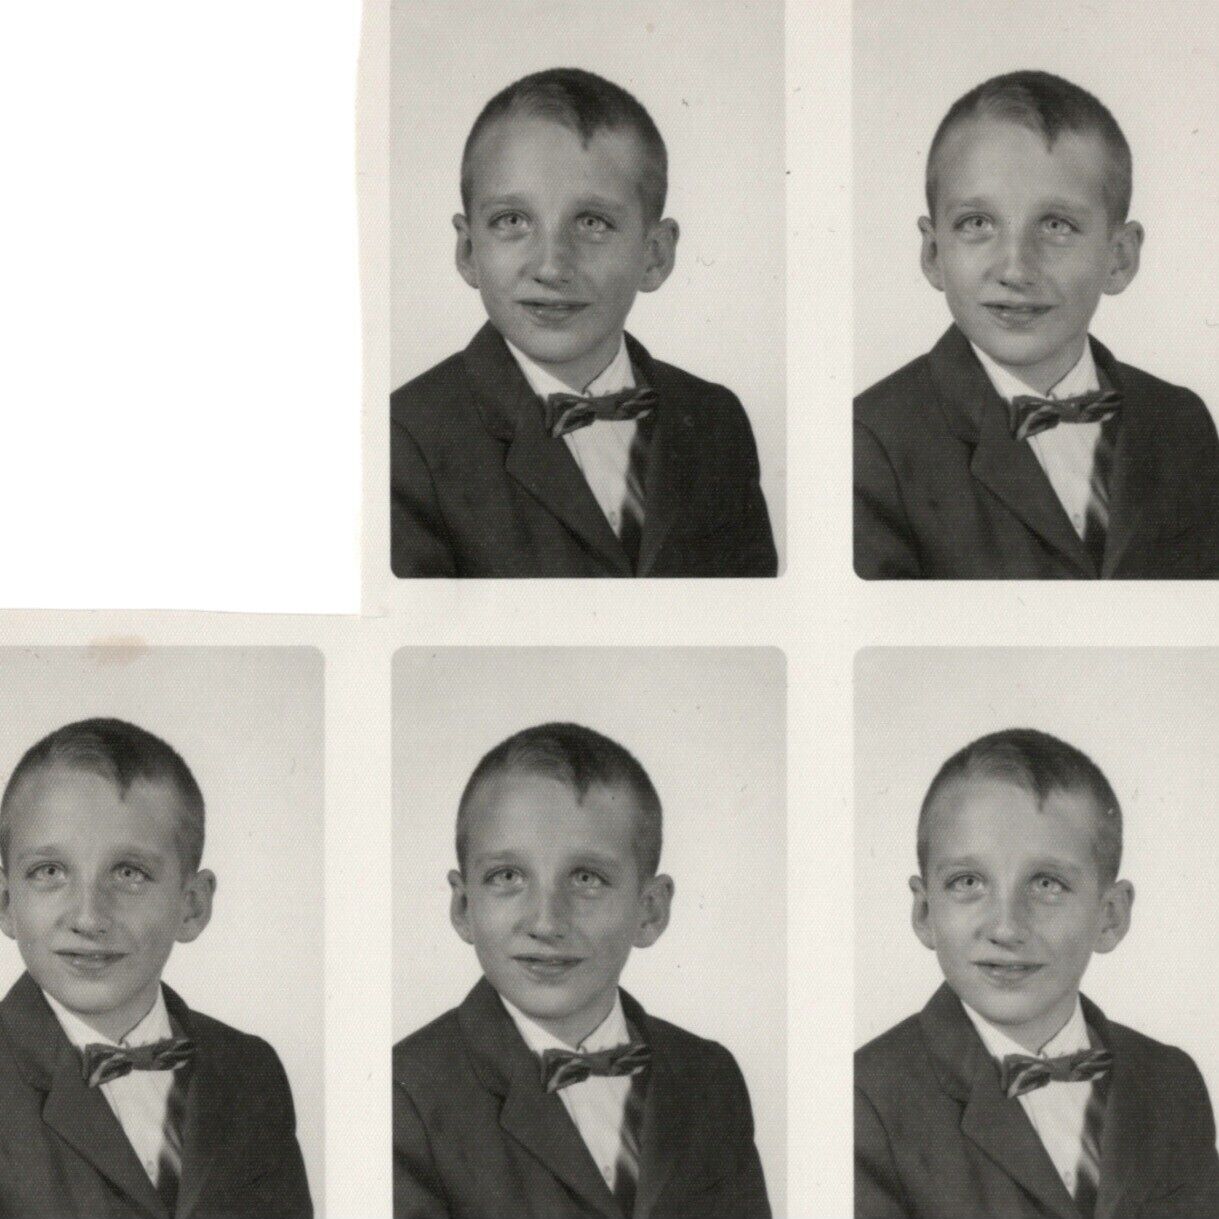 Vtg. 50s School Portrait Found Photo Sheet Child Boy Bow Tie Wave Hair Hairstyle